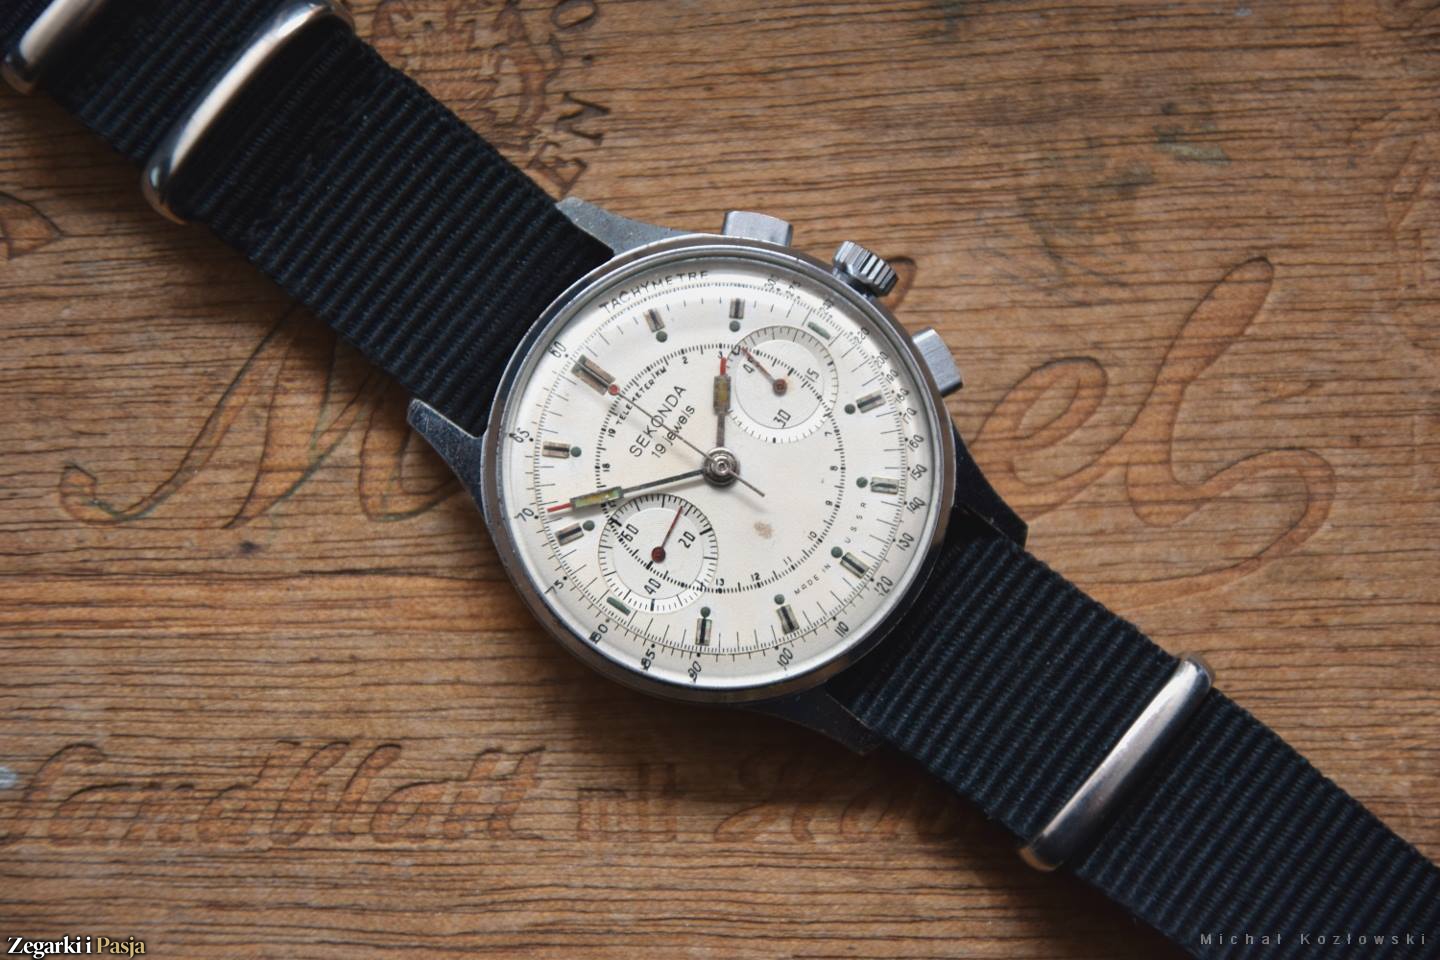 Zegarek Vintage lipiec 2016 wybrany - poznajcie finalistów i zwycięzcę !